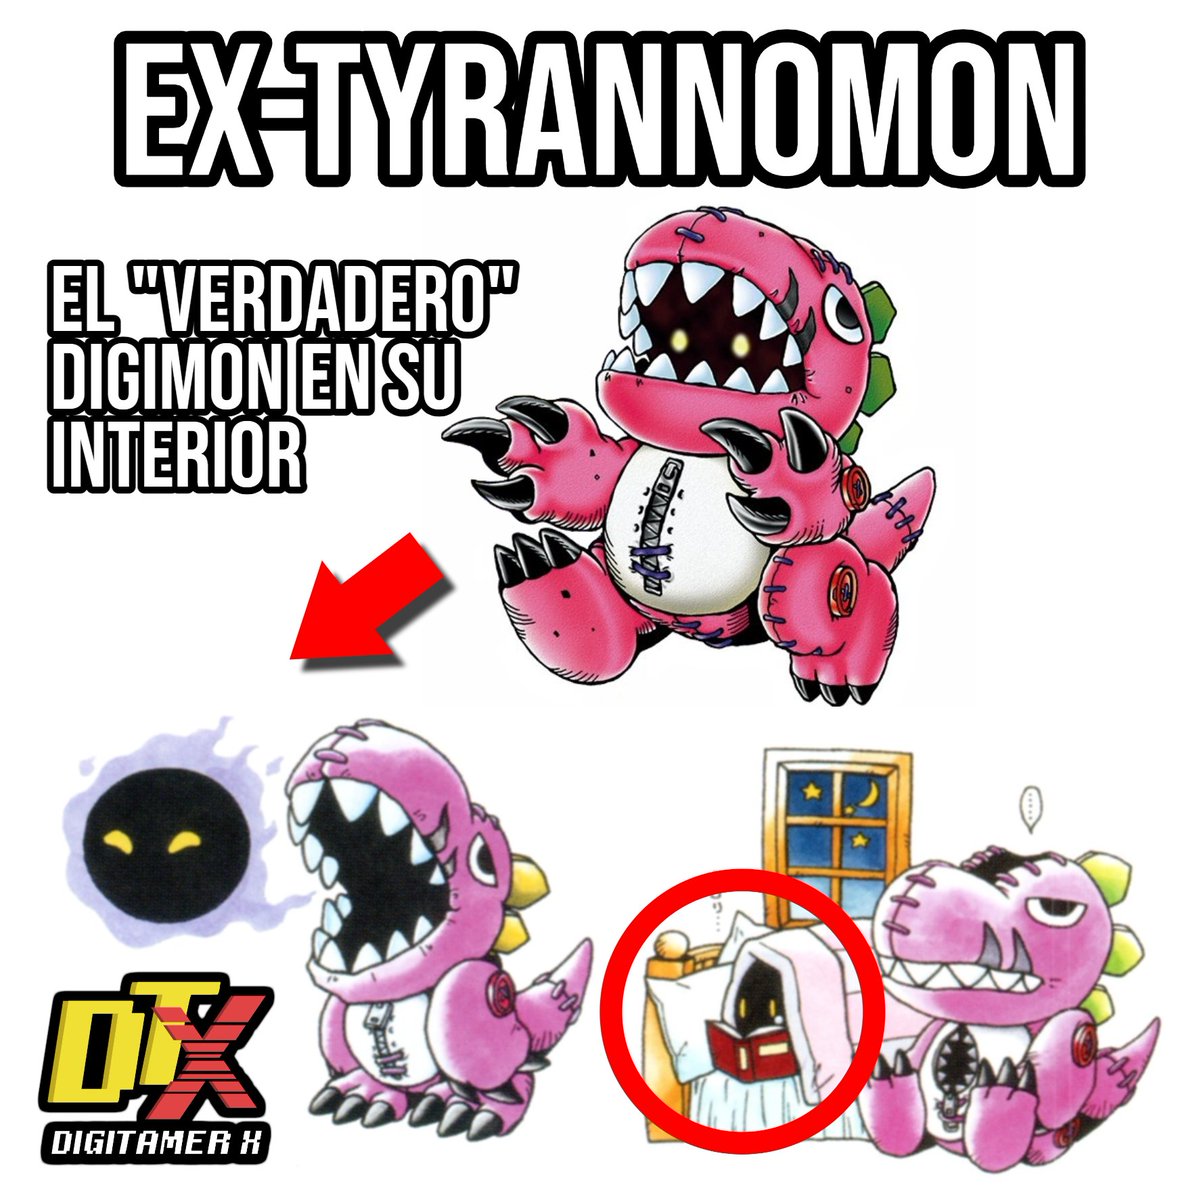 🔵 A diferencia de Monzaemon del que solo podemos especular su interior (Aunque nos tiren indirectas). Ex-Tyrannomon realmente tiene su ser a la vista después de todo. Y me gusta.
#Digimon #デジモン #DigimonCardGame